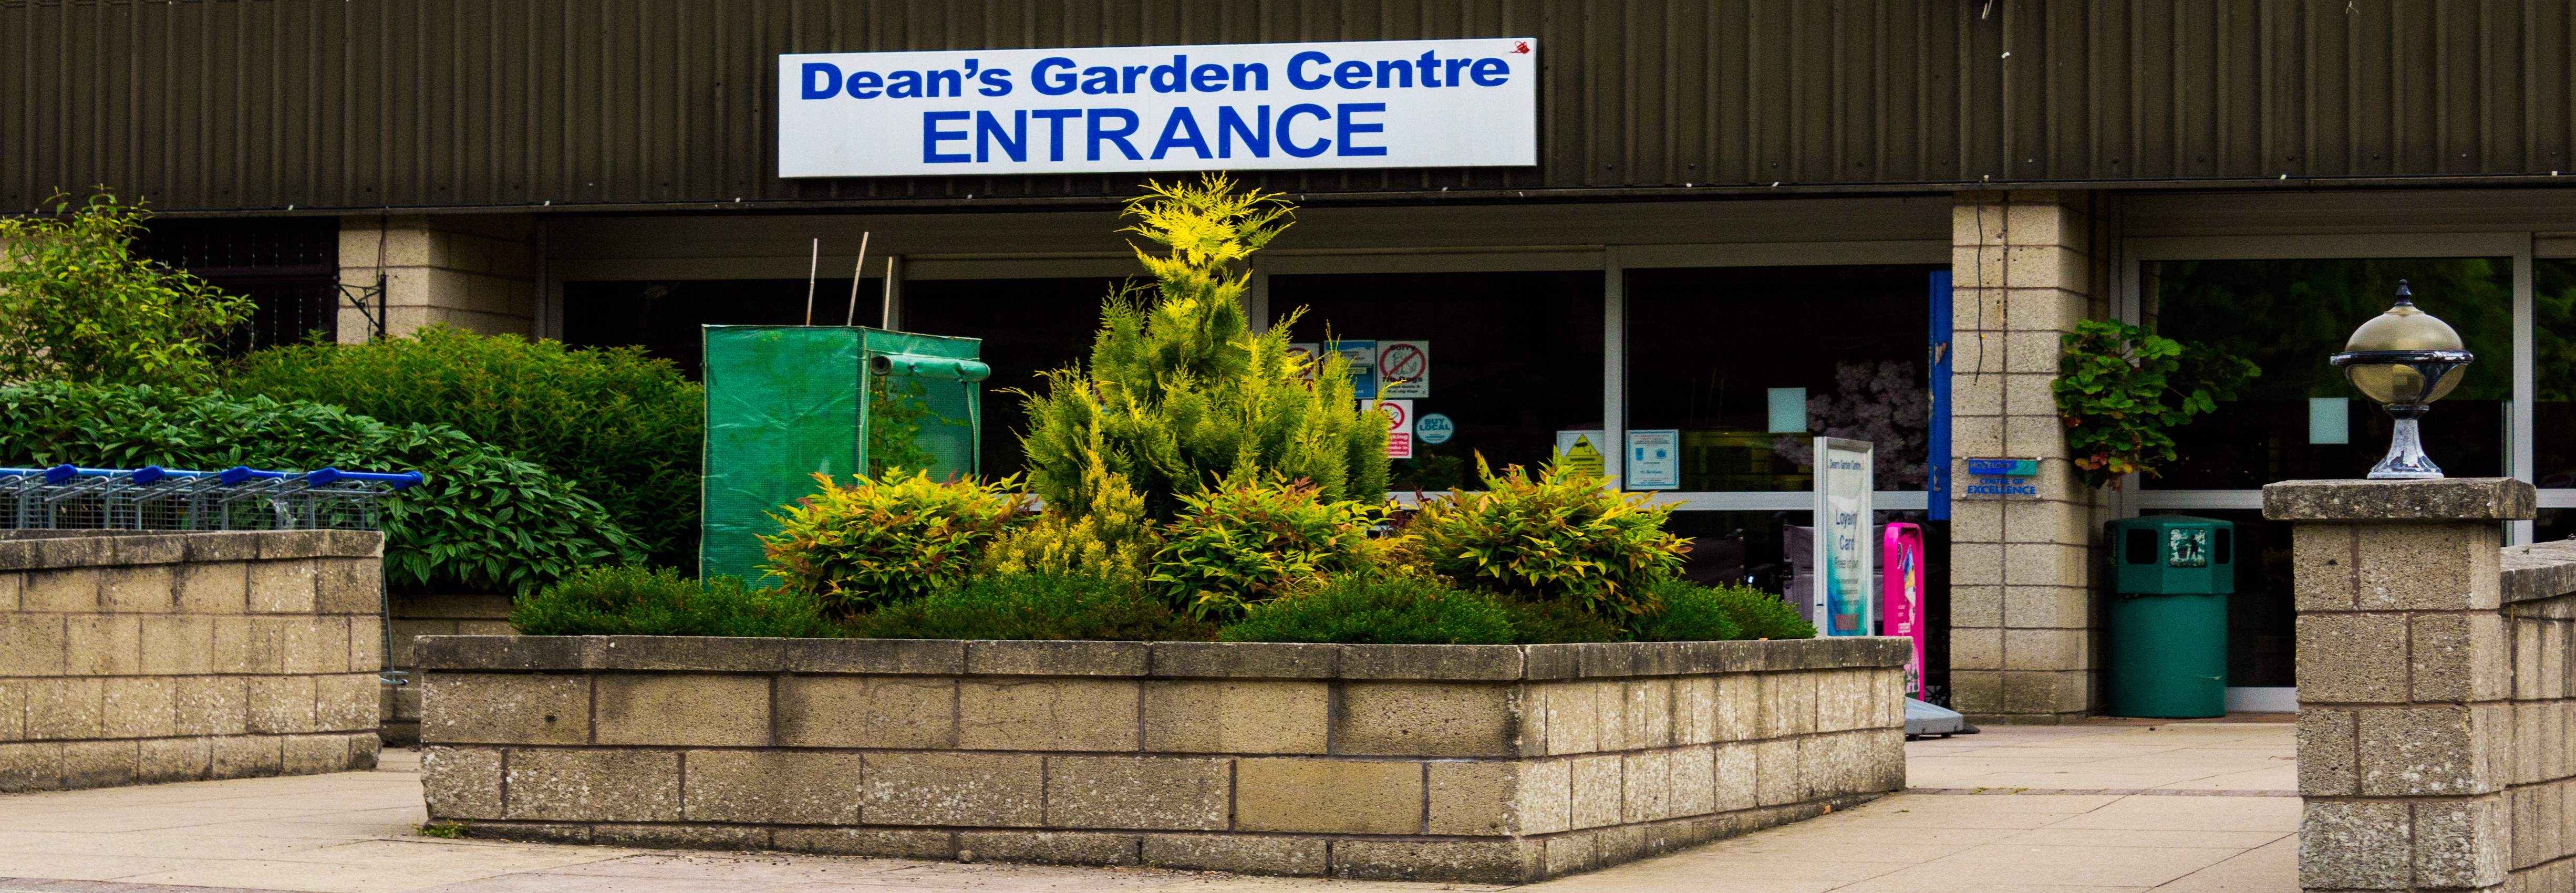 Scarborough Garden Centre Dean S Garden Centre